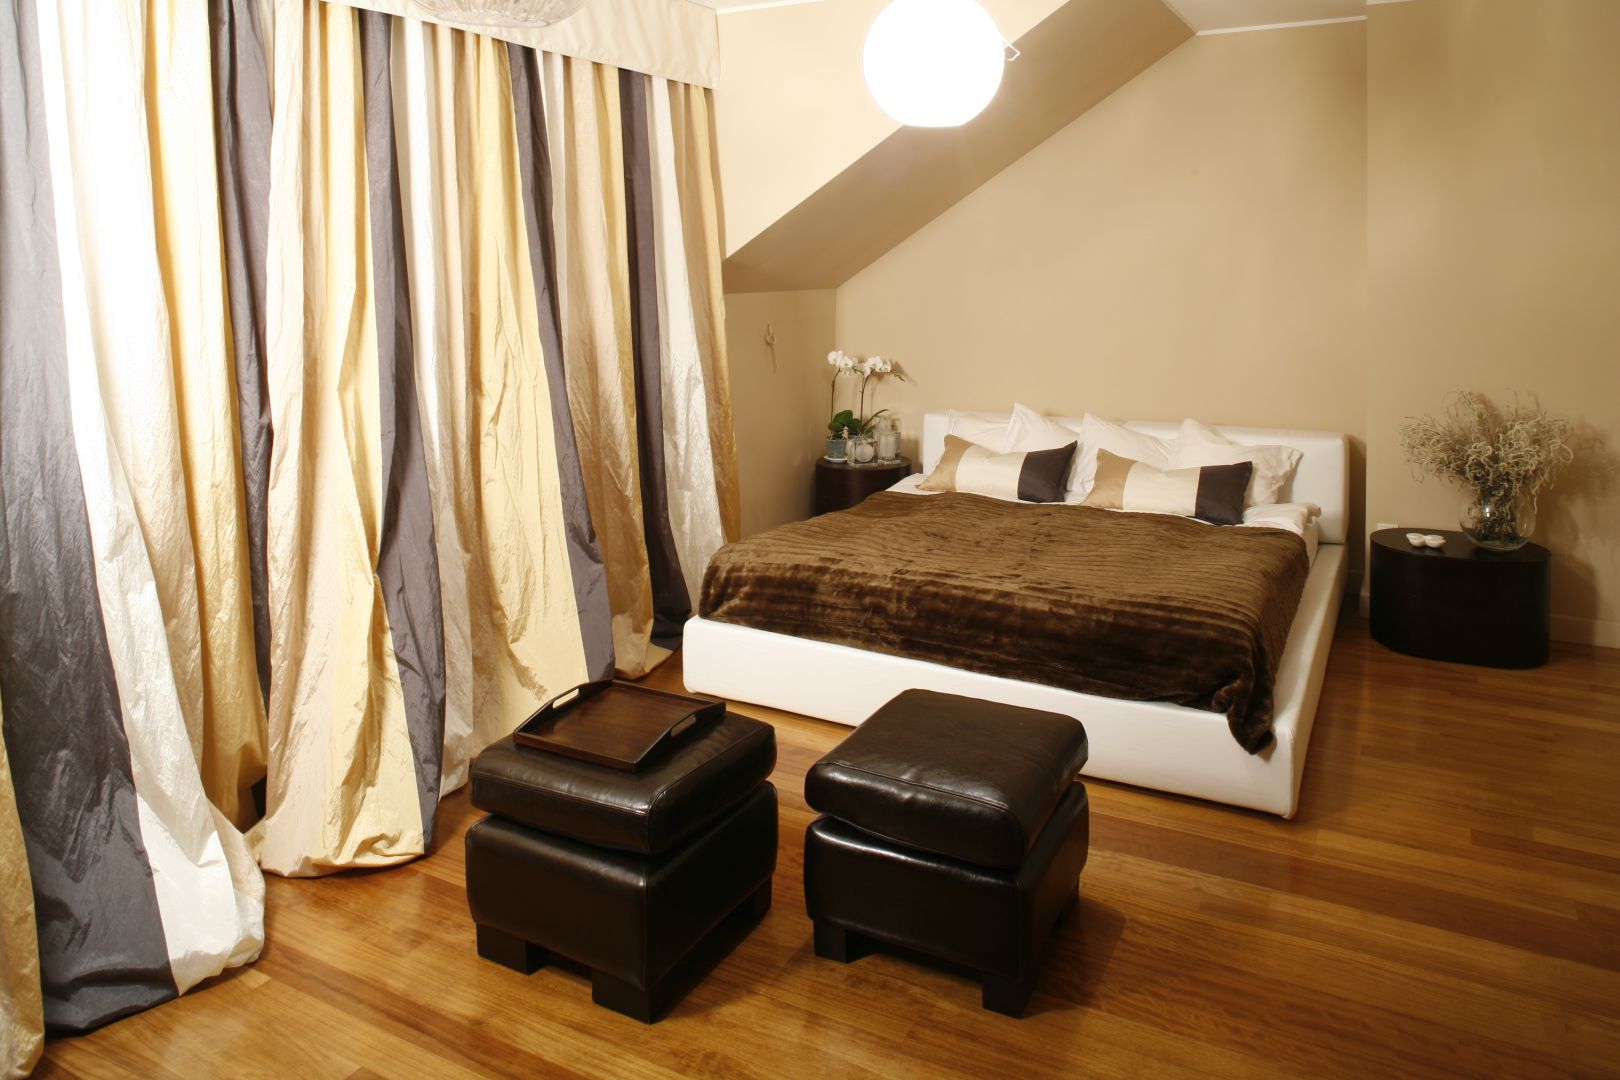 Idealny mariaż beżu oraz bieli. Miękkie, tapicerowane łóżko, zestawiono z brązowymi pufami, na zasadach kontrastu. Projekt: Joanna Liss. Fot. Bartosz Jarosz 